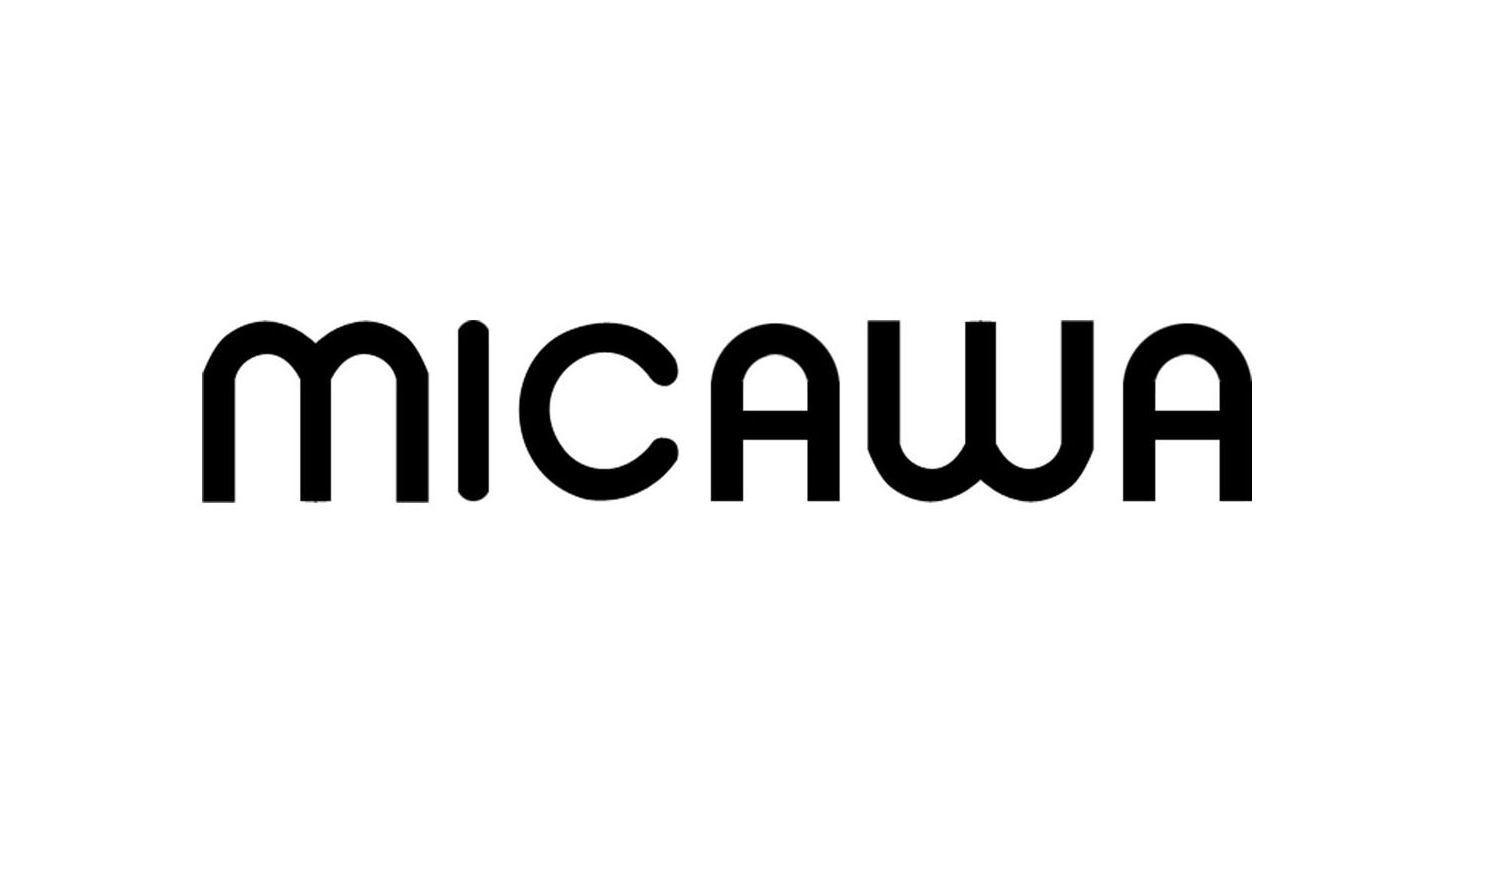 MICAWA